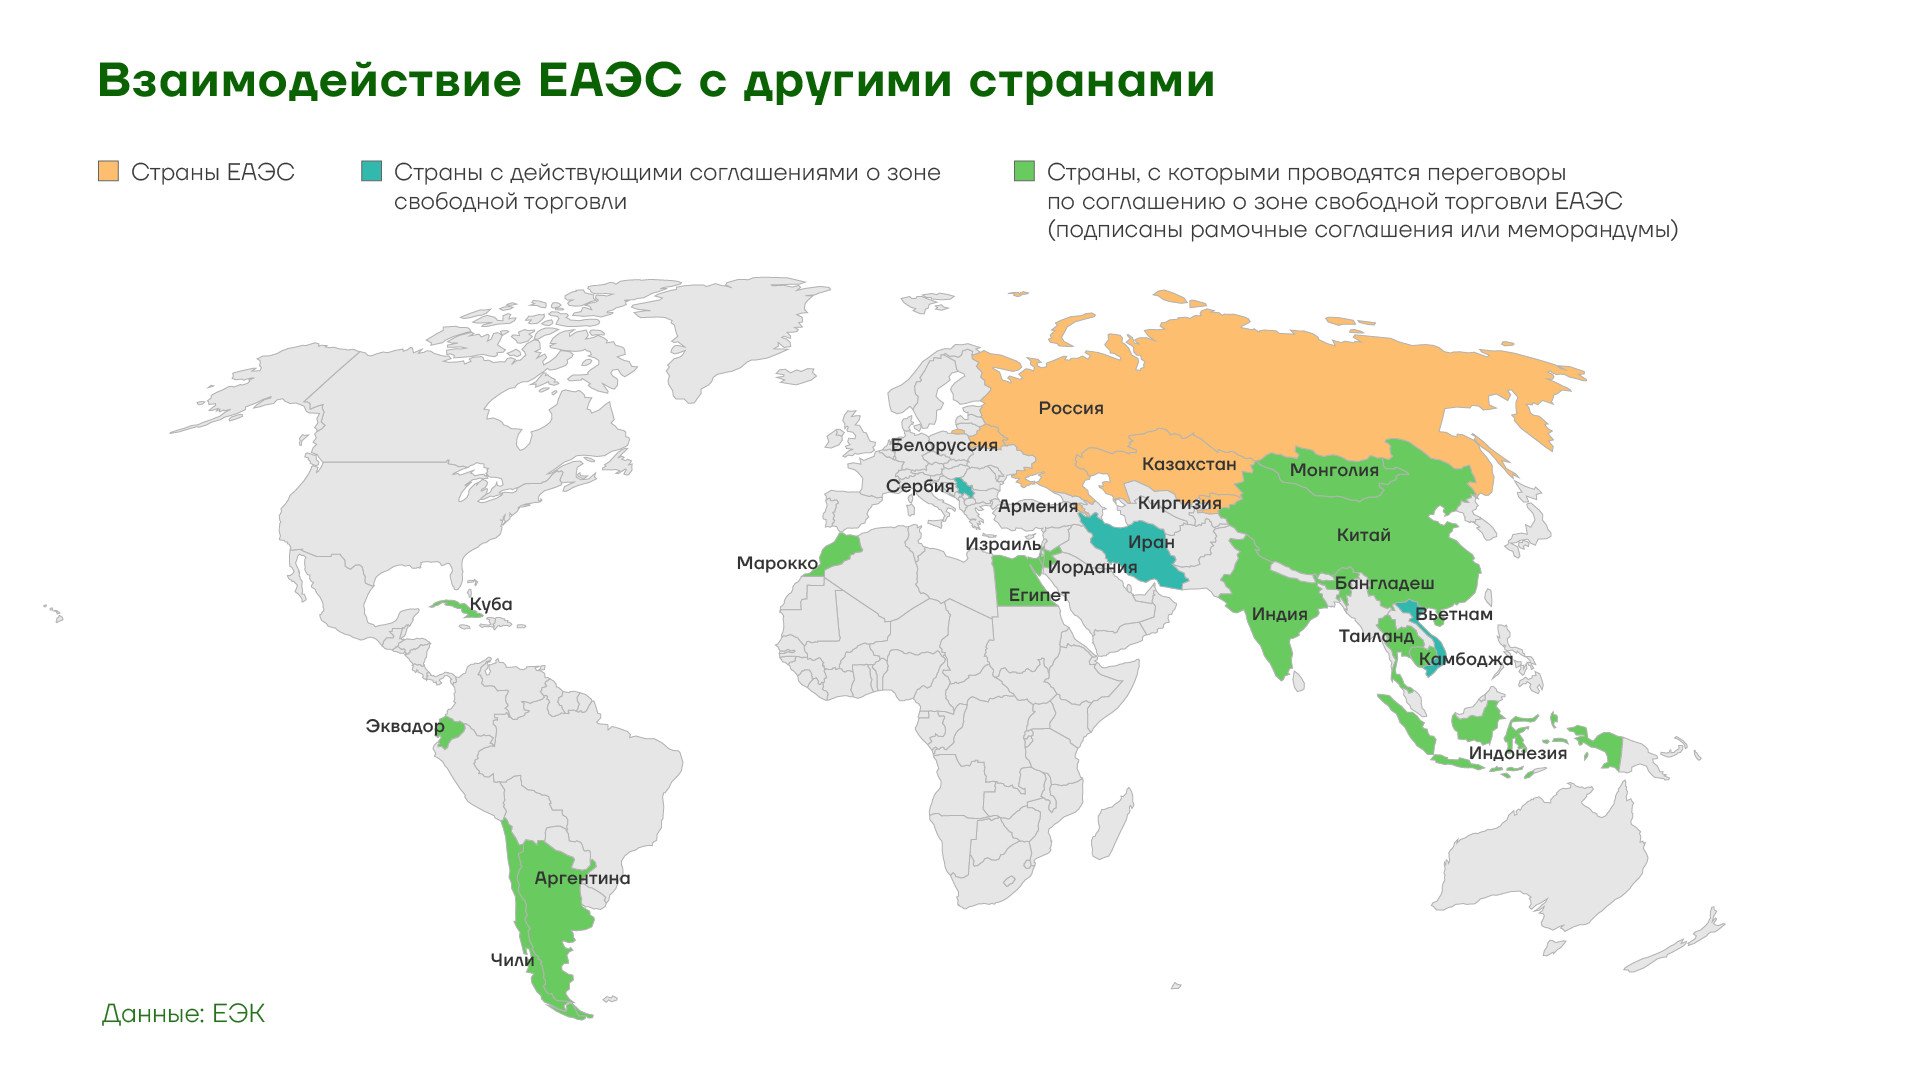 Страны входящие в евразийский экономический союз. Крупнейшие экономические Союзы на карте. Экономические Союзы и связи Греции.